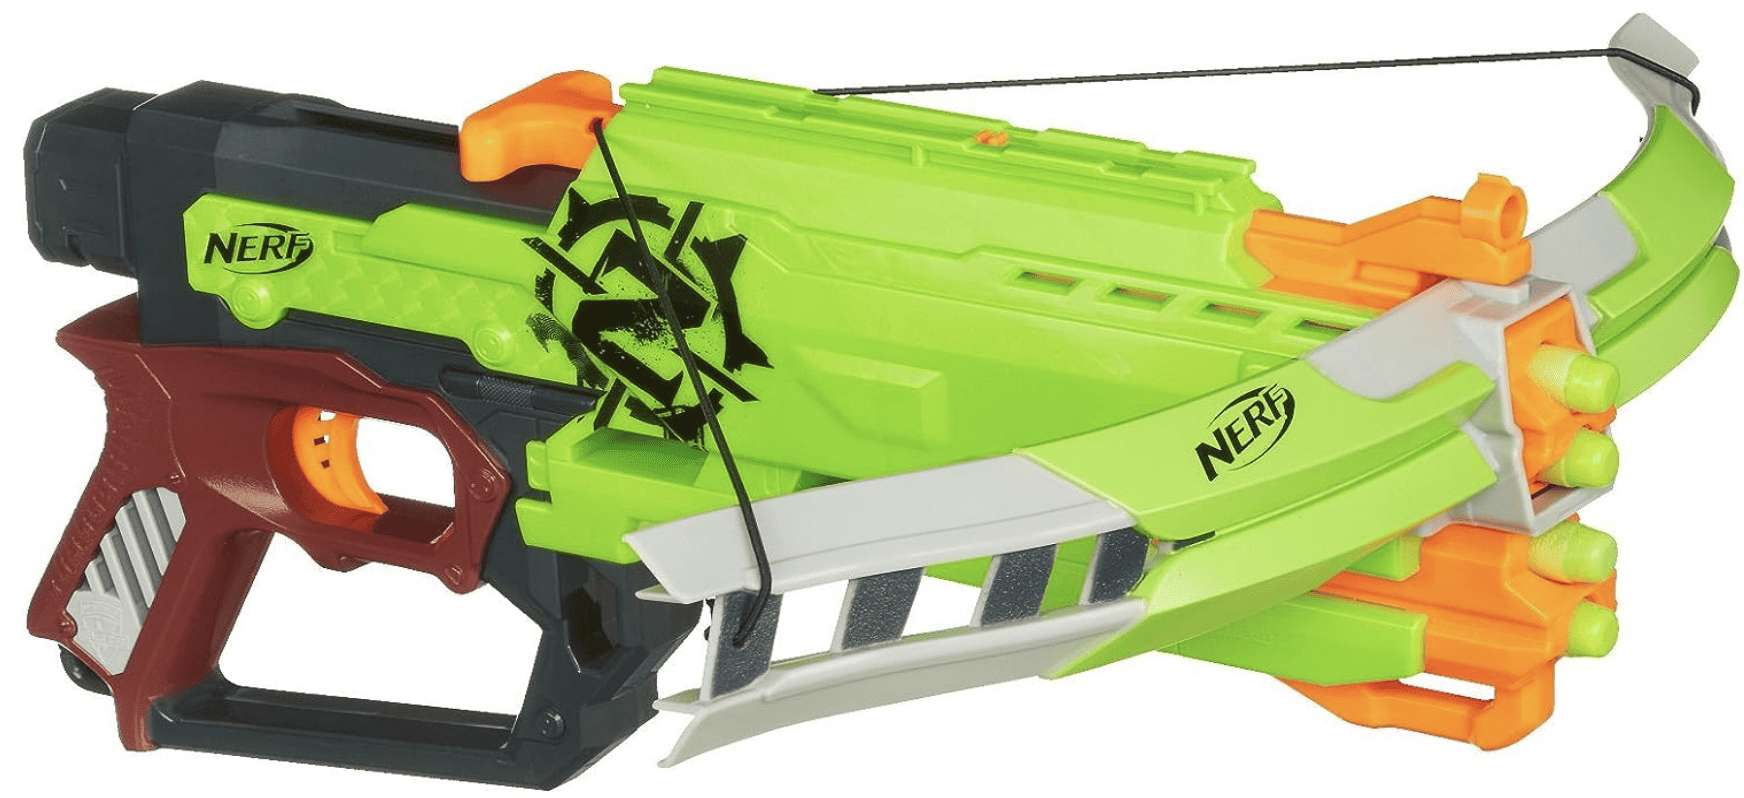 Nerf Zombie Crossbow